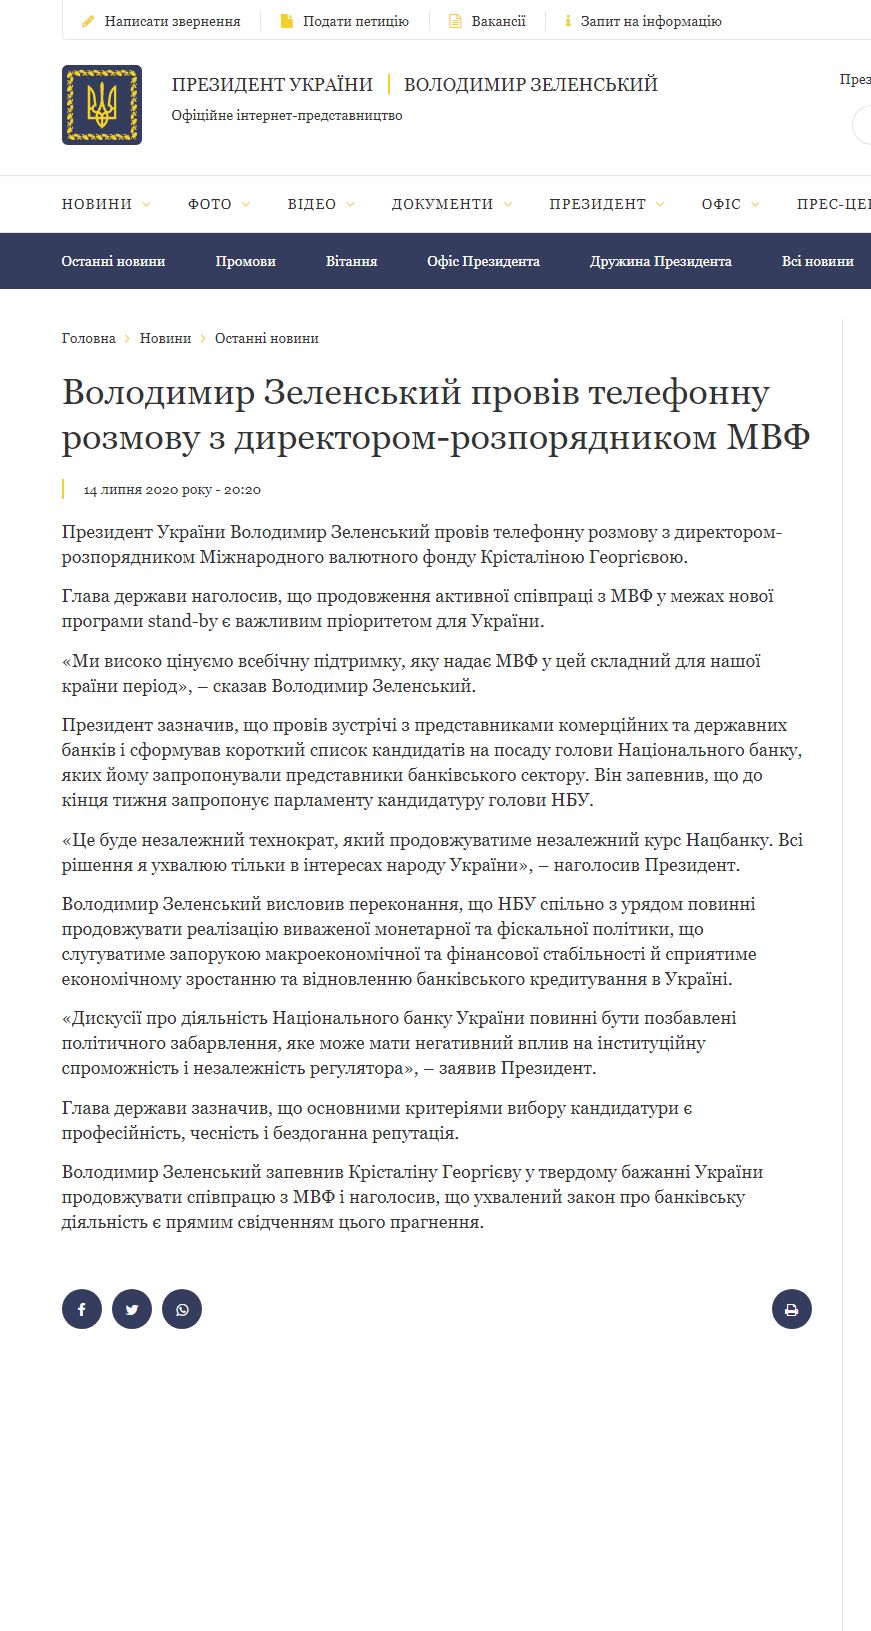 https://president.gov.ua/news/volodimir-zelenskij-proviv-telefonnu-rozmovu-z-direktorom-ro-62277